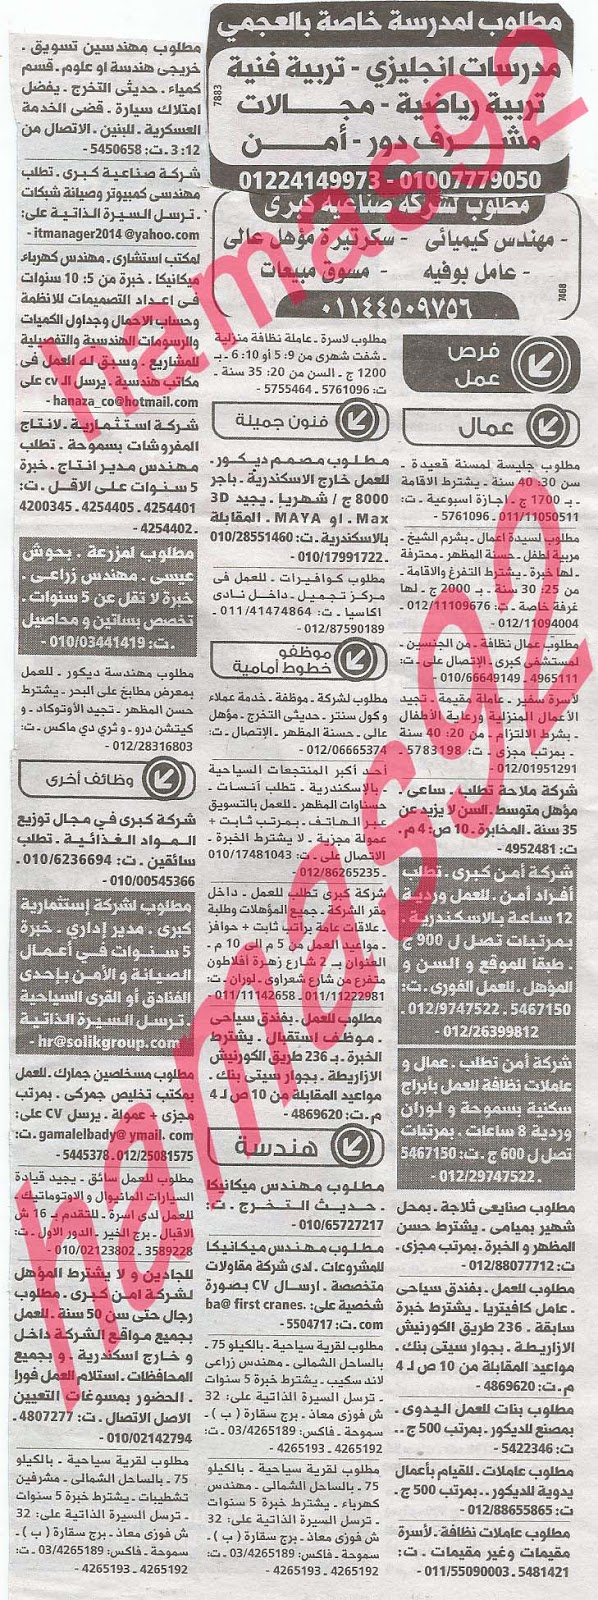 وظائف خالية فى جريدة الوسيط الاسكندرية الاثنين 26-08-2013 %D9%88+%D8%B3+%D8%B3+14